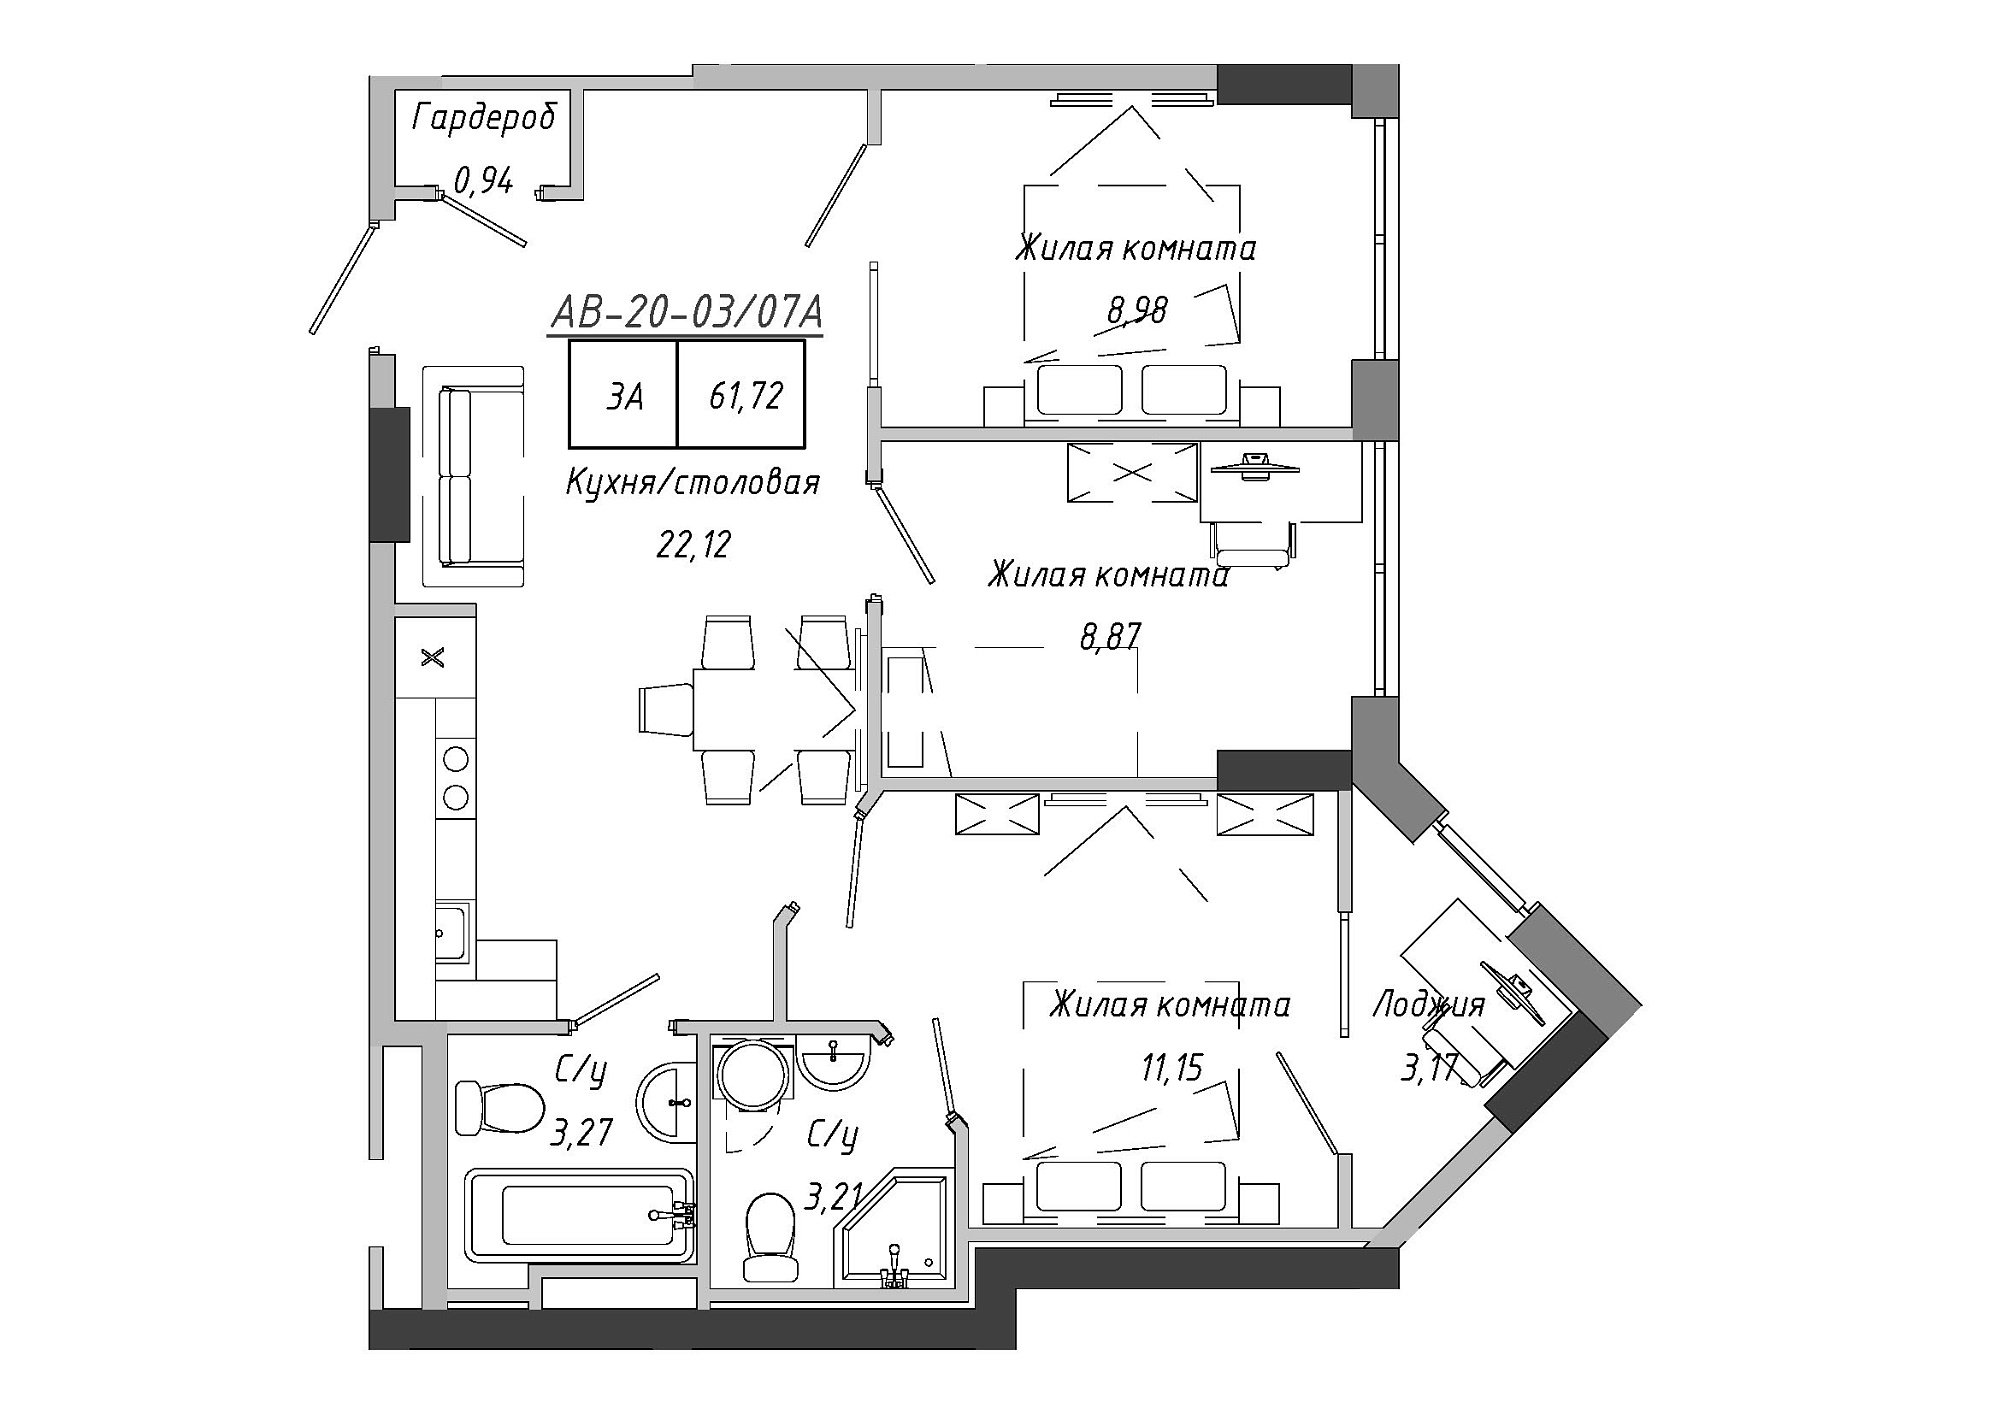 Планування 3-к квартира площею 61.72м2, AB-20-03/0007а.